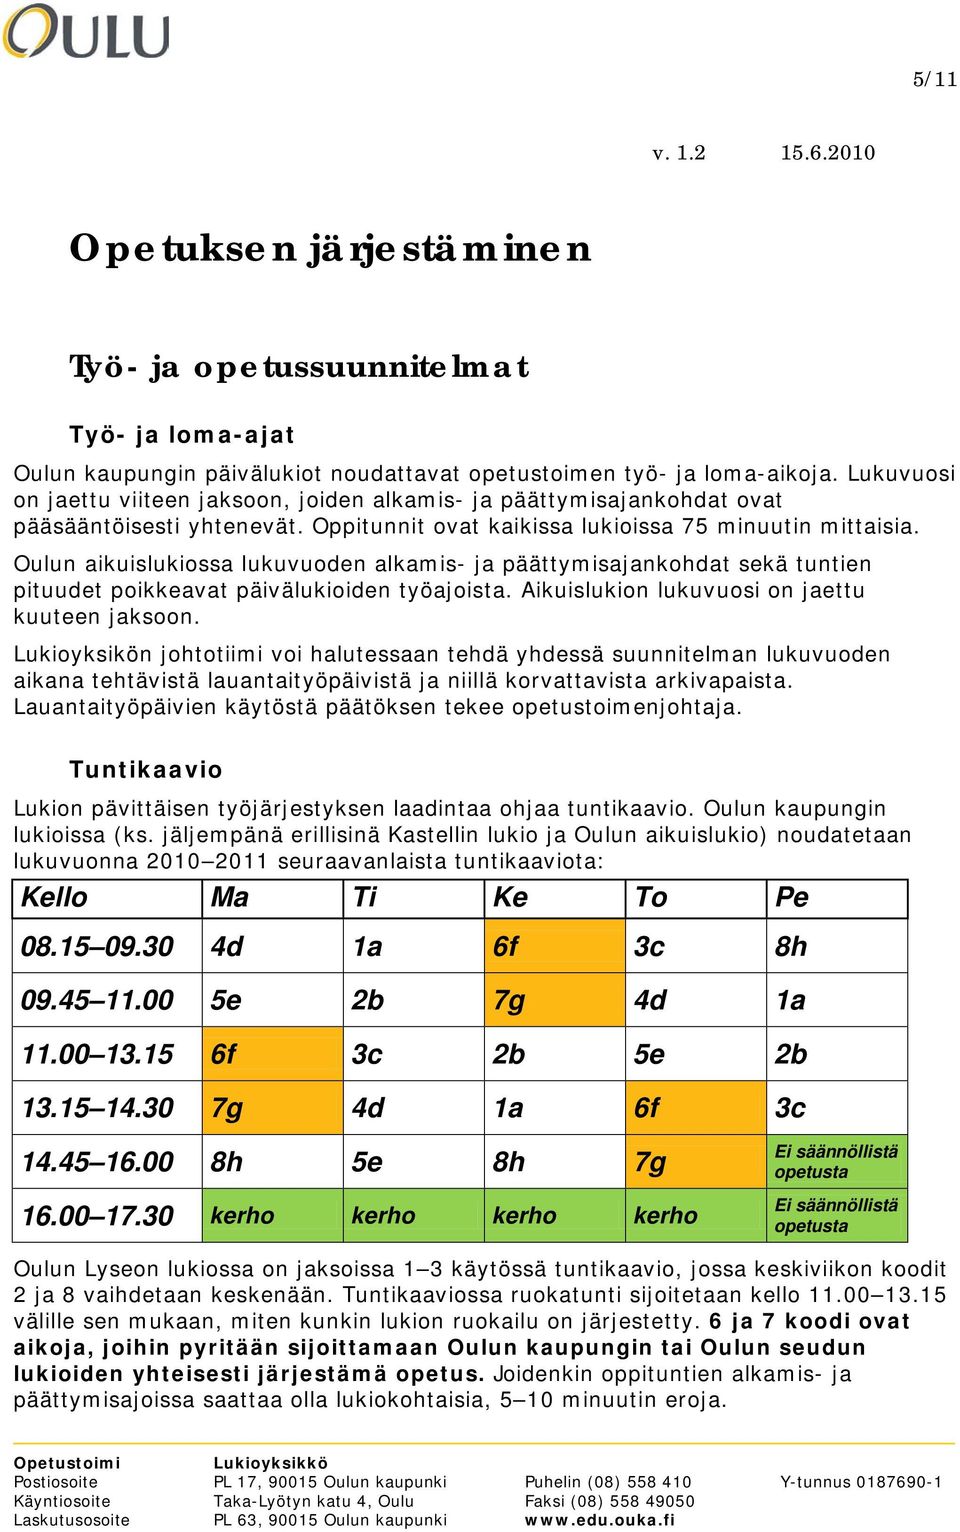 Oulun aikuislukiossa lukuvuoden alkamis- ja päättymisajankohdat sekä tuntien pituudet poikkeavat päivälukioiden työajoista. Aikuislukion lukuvuosi on jaettu kuuteen jaksoon.